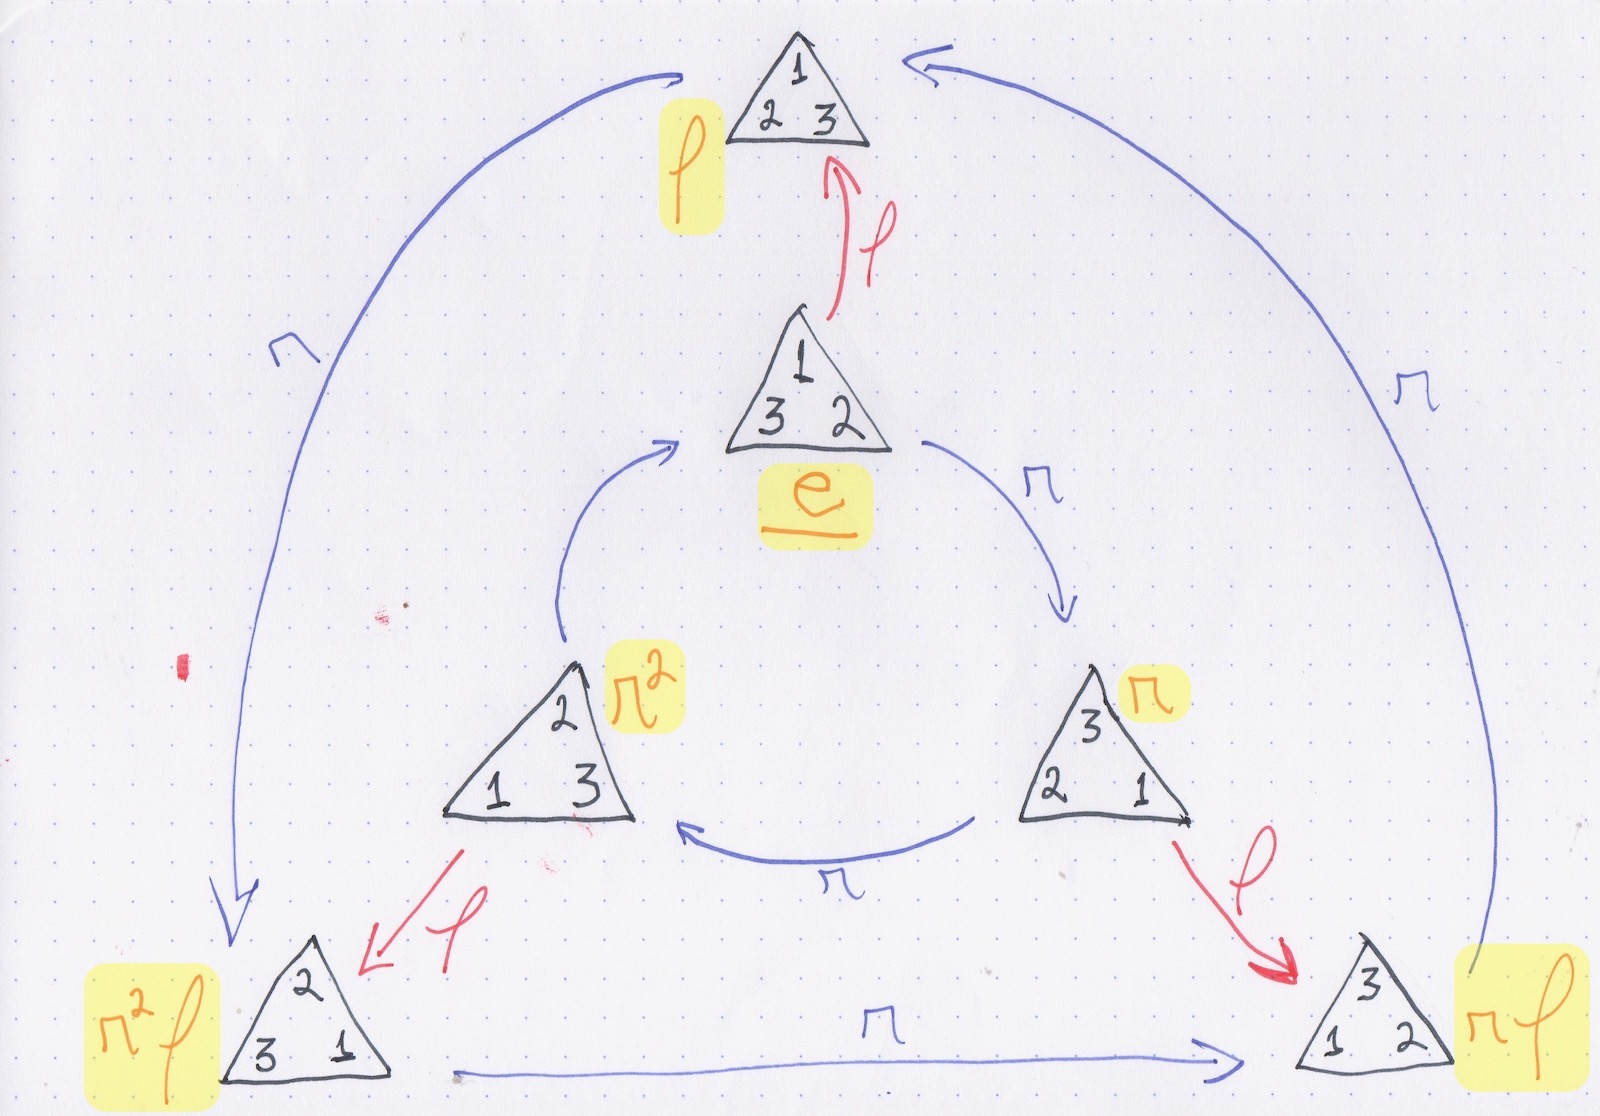 Figura 1: Grupo S3 ou D3, formado pelos movimentos de um triângulo